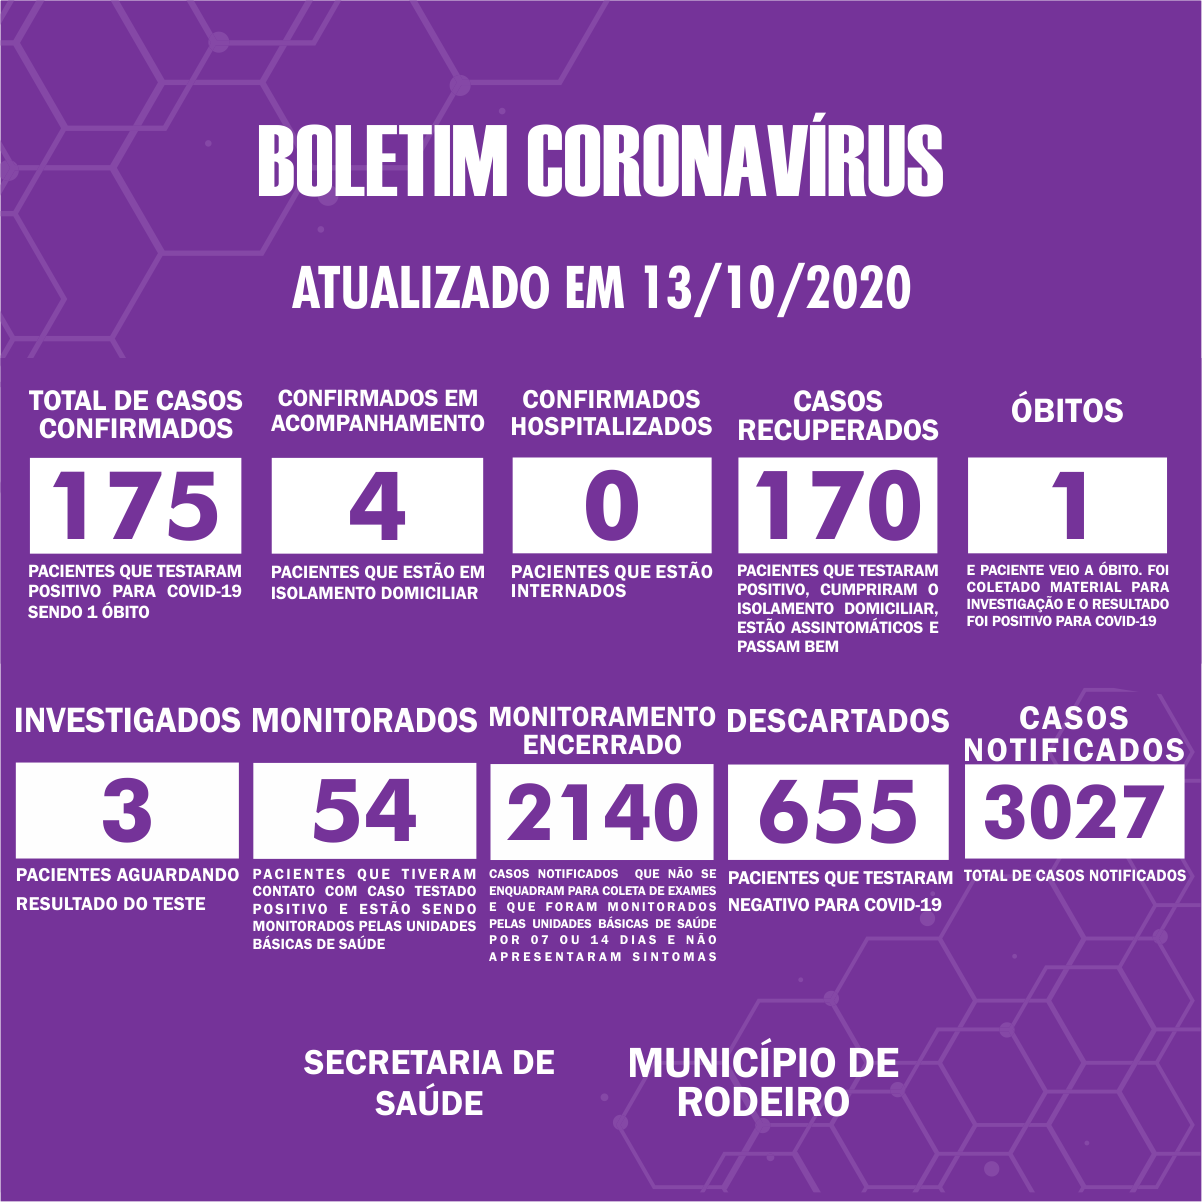 Boletim Epidemiológico do Município de Rodeiro sobre coronavírus, atualizado em 13/10/2020